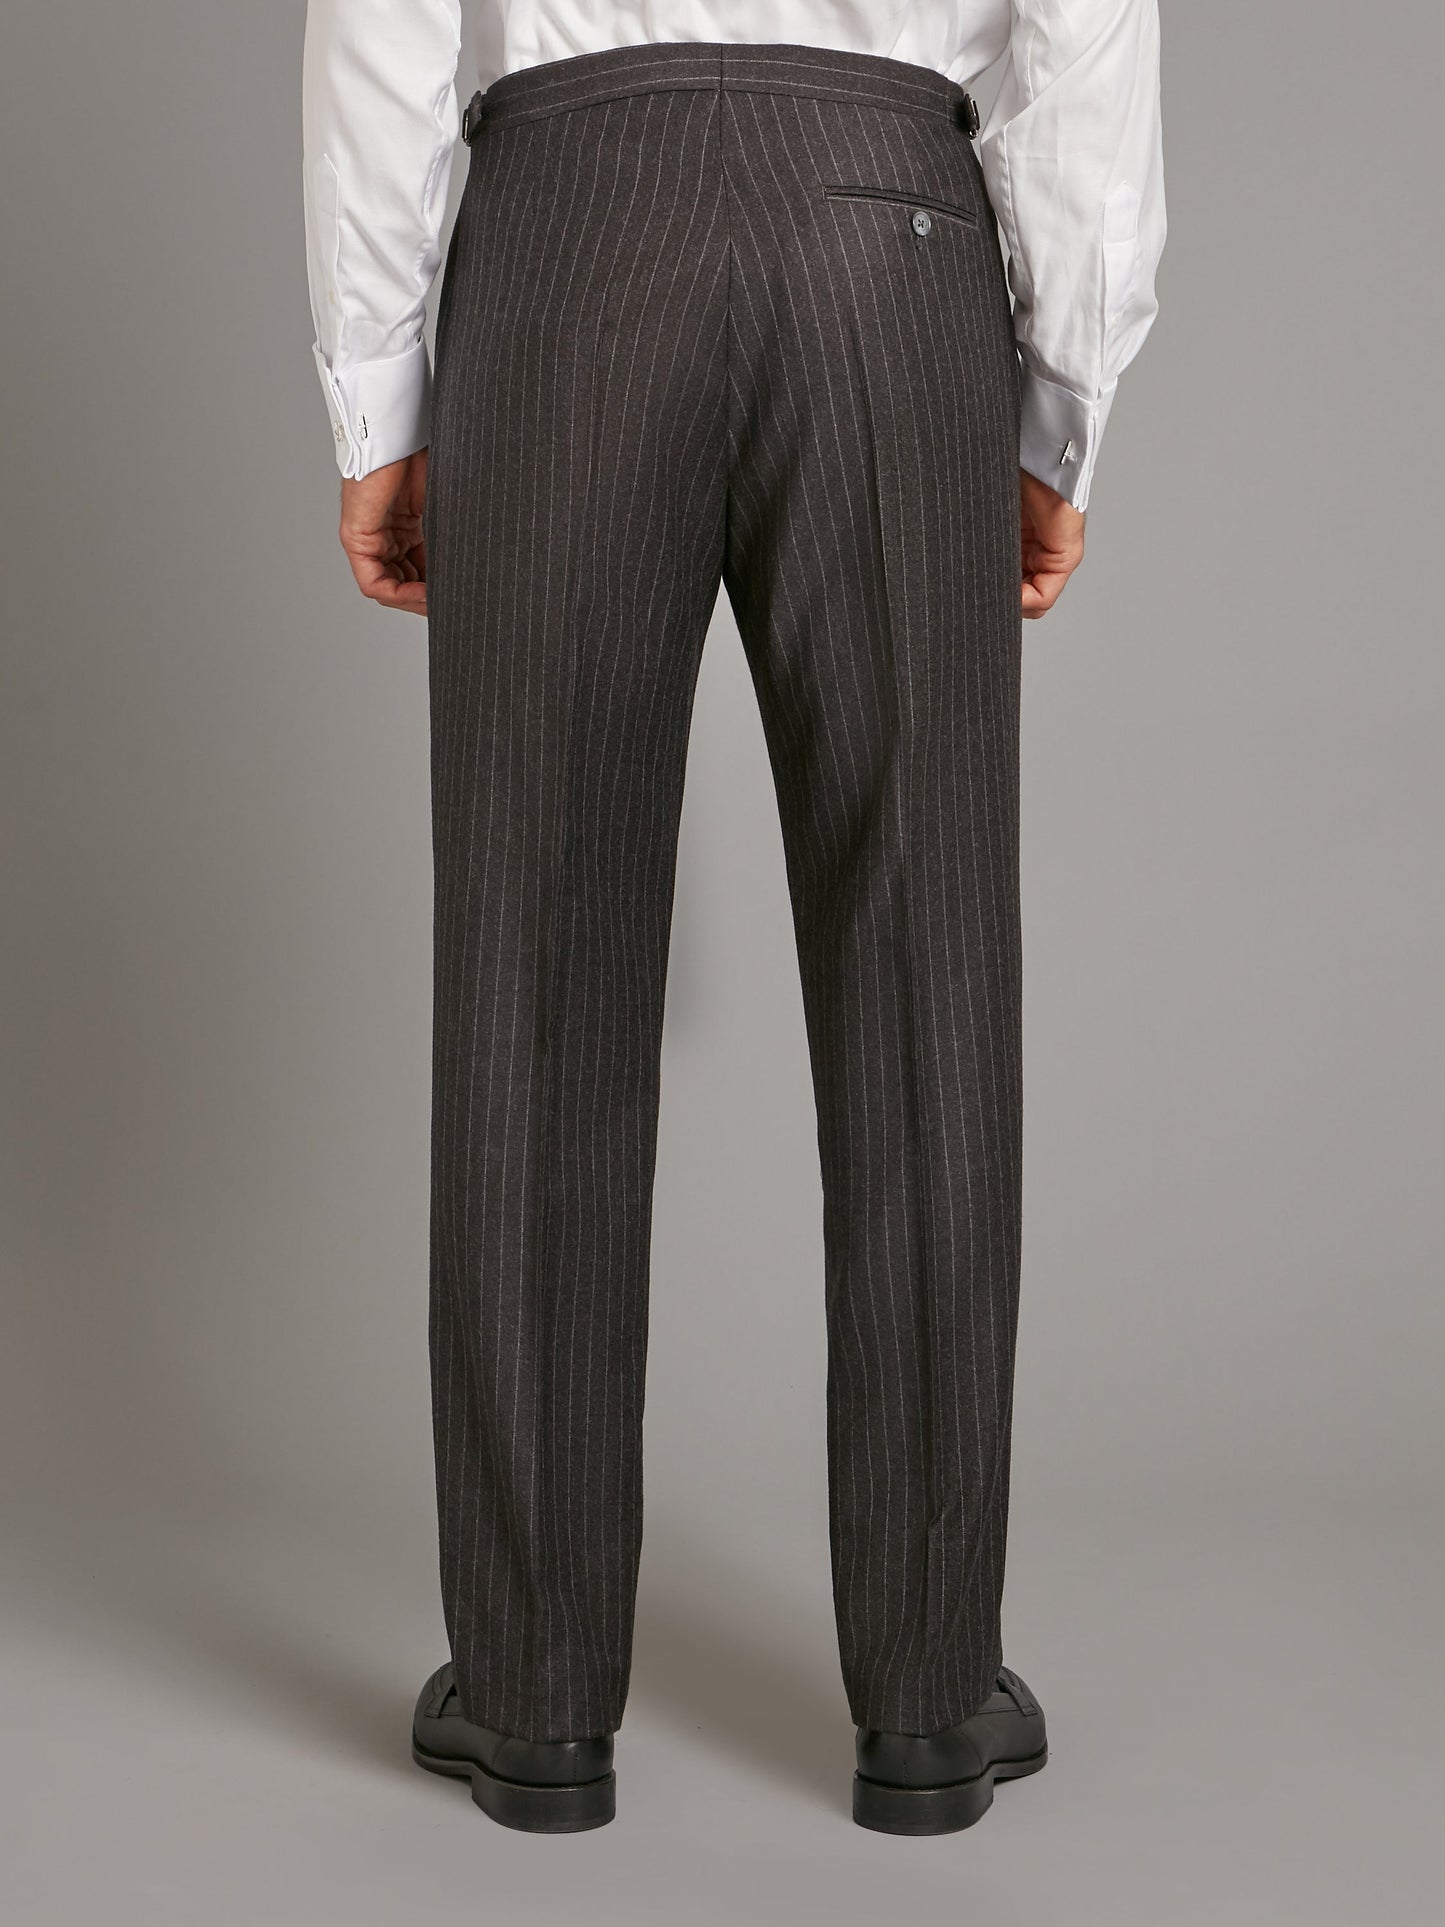 cadogan suit flannel chalk stripe charcoal 7